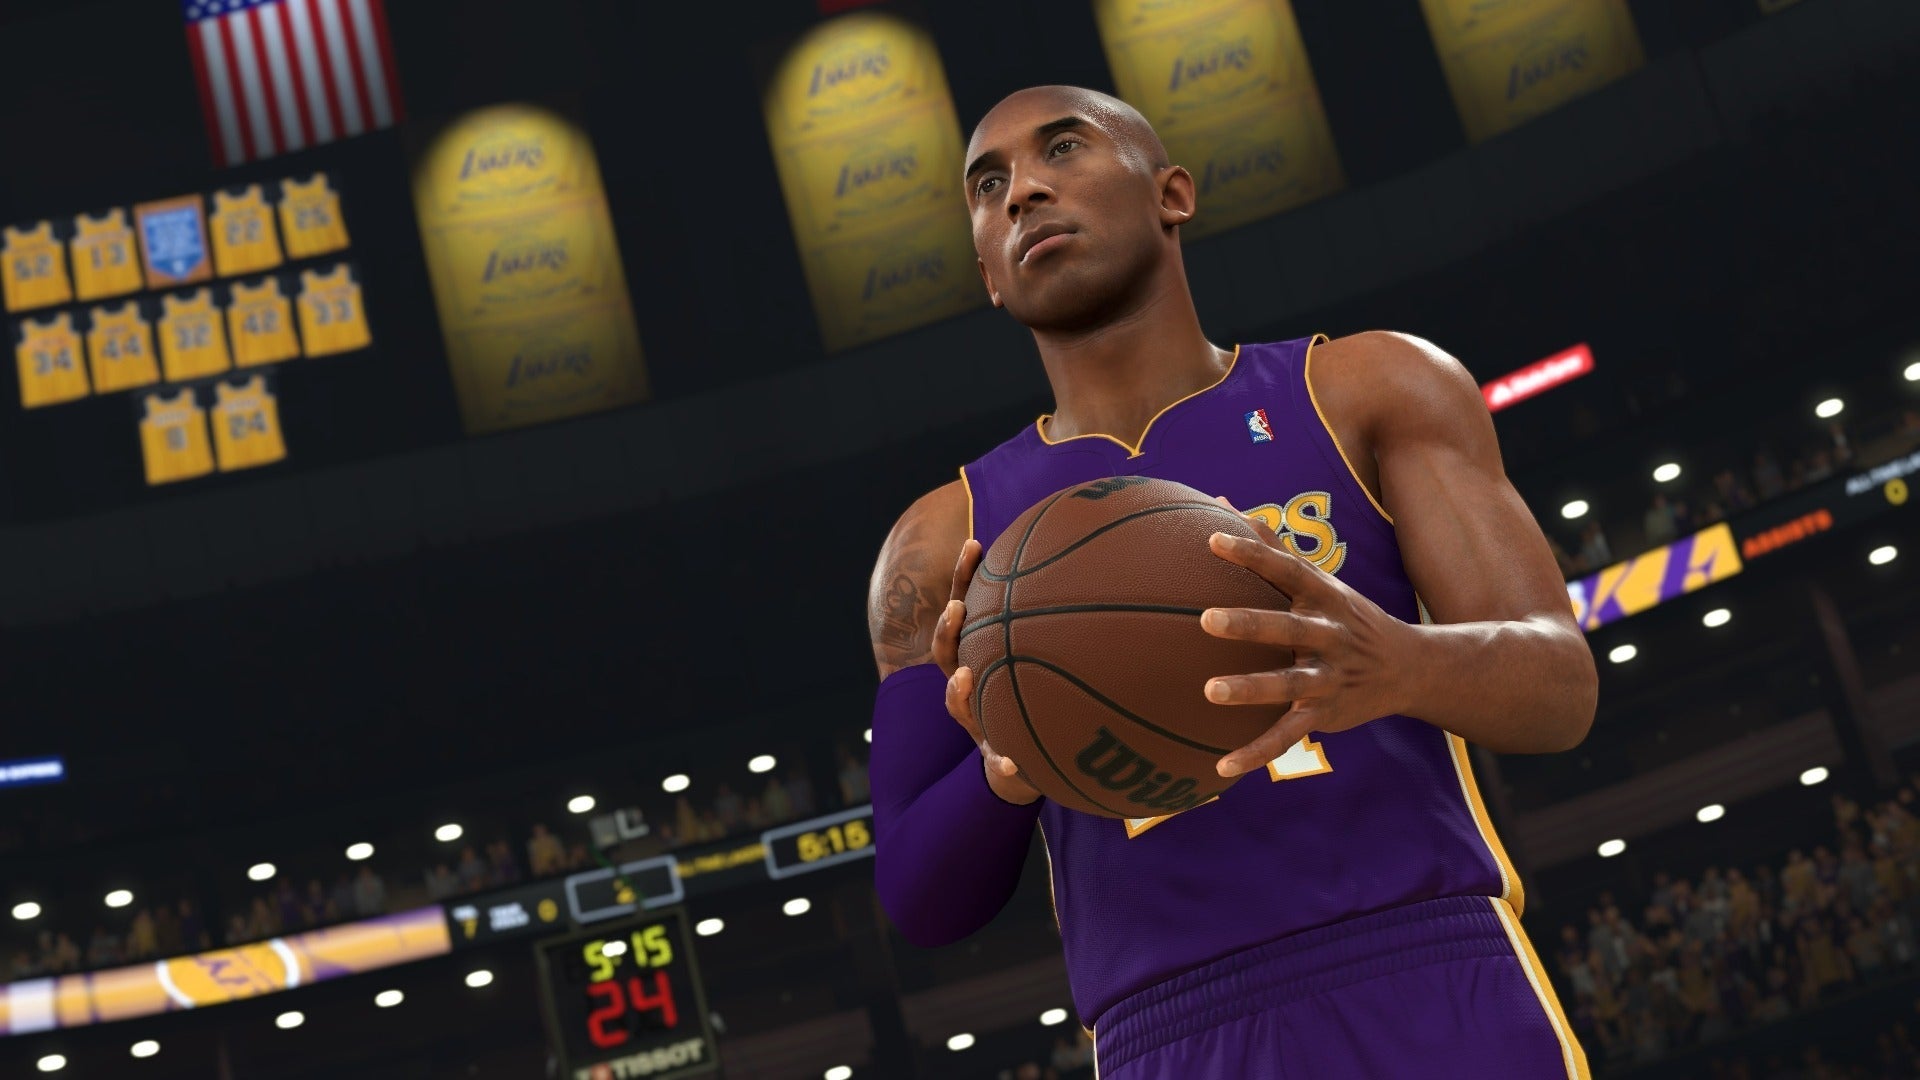 NBA 2K24 (Baller Edition) - Xbox